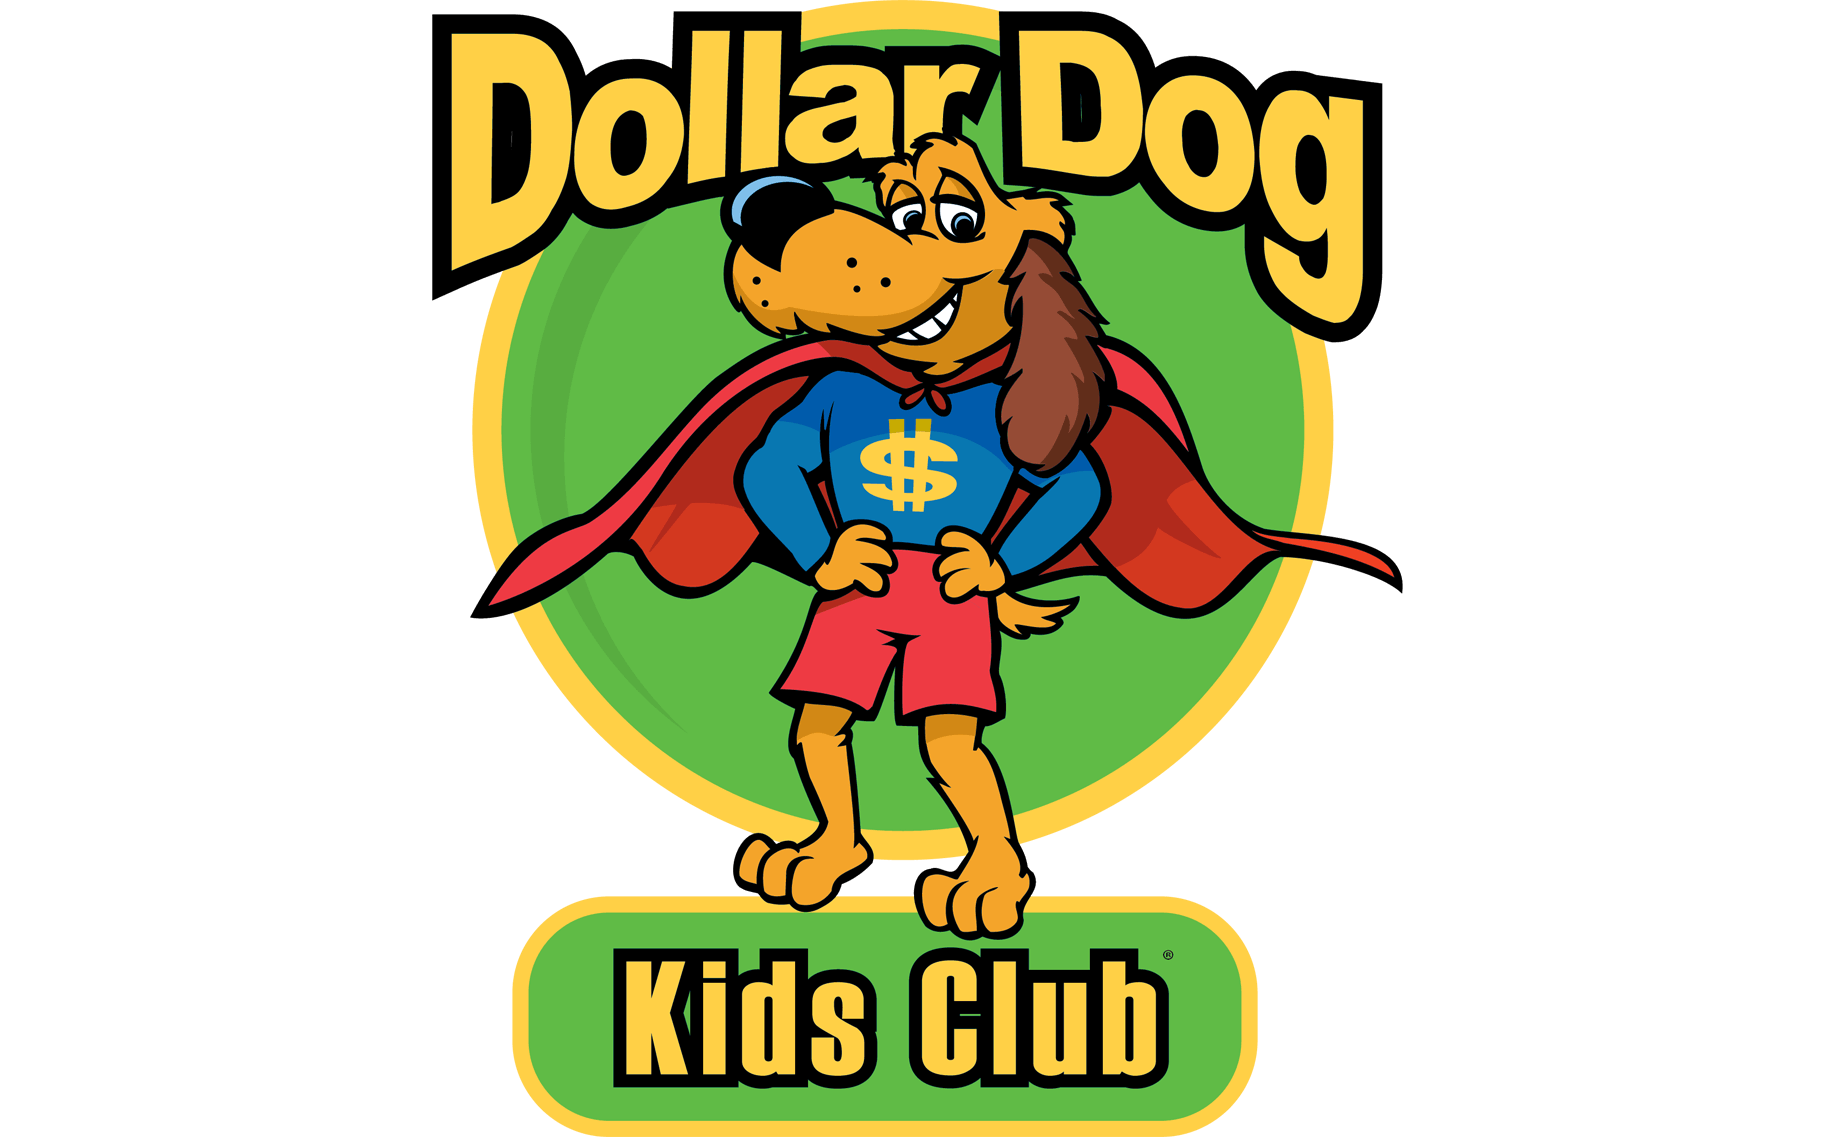 Dollar Dog® Kids Club